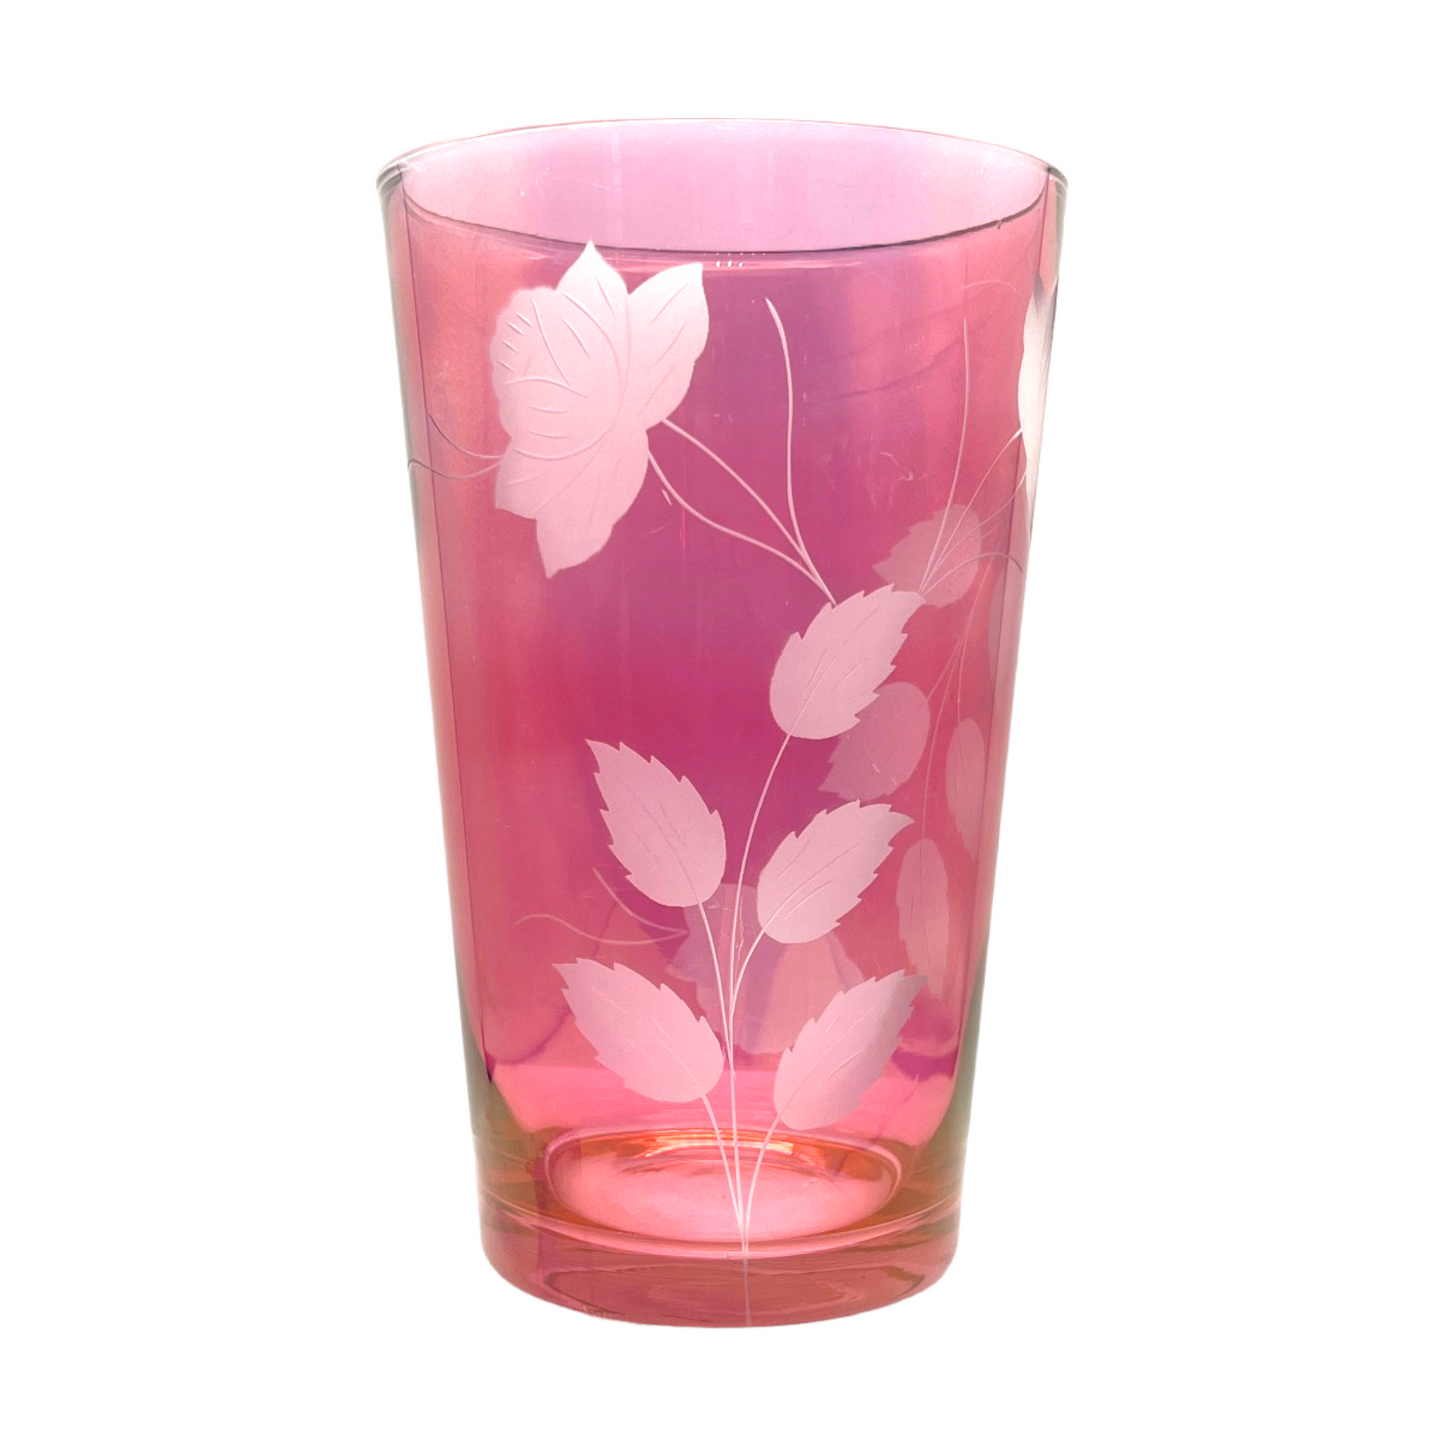 Vintage Rose Etched Cranberry Vase - Artistry Preserved